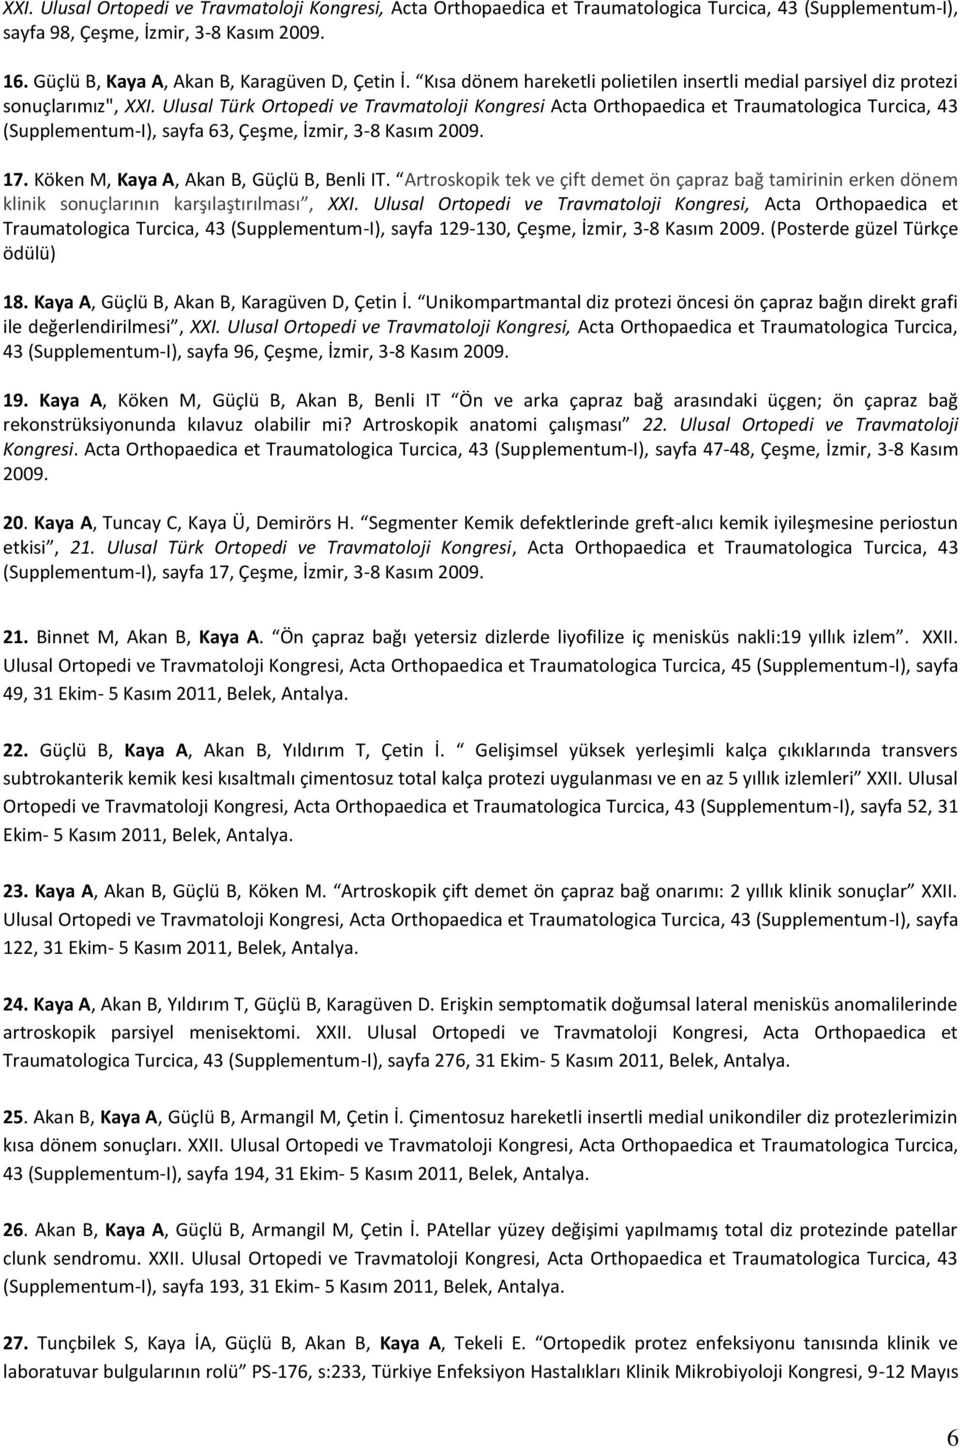 Ulusal Türk Ortopedi ve Travmatoloji Kongresi Acta Orthopaedica et Traumatologica Turcica, 43 (Supplementum-I), sayfa 63, Çeşme, İzmir, 3-8 Kasım 2009. 17. Köken M, Kaya A, Akan B, Güçlü B, Benli IT.